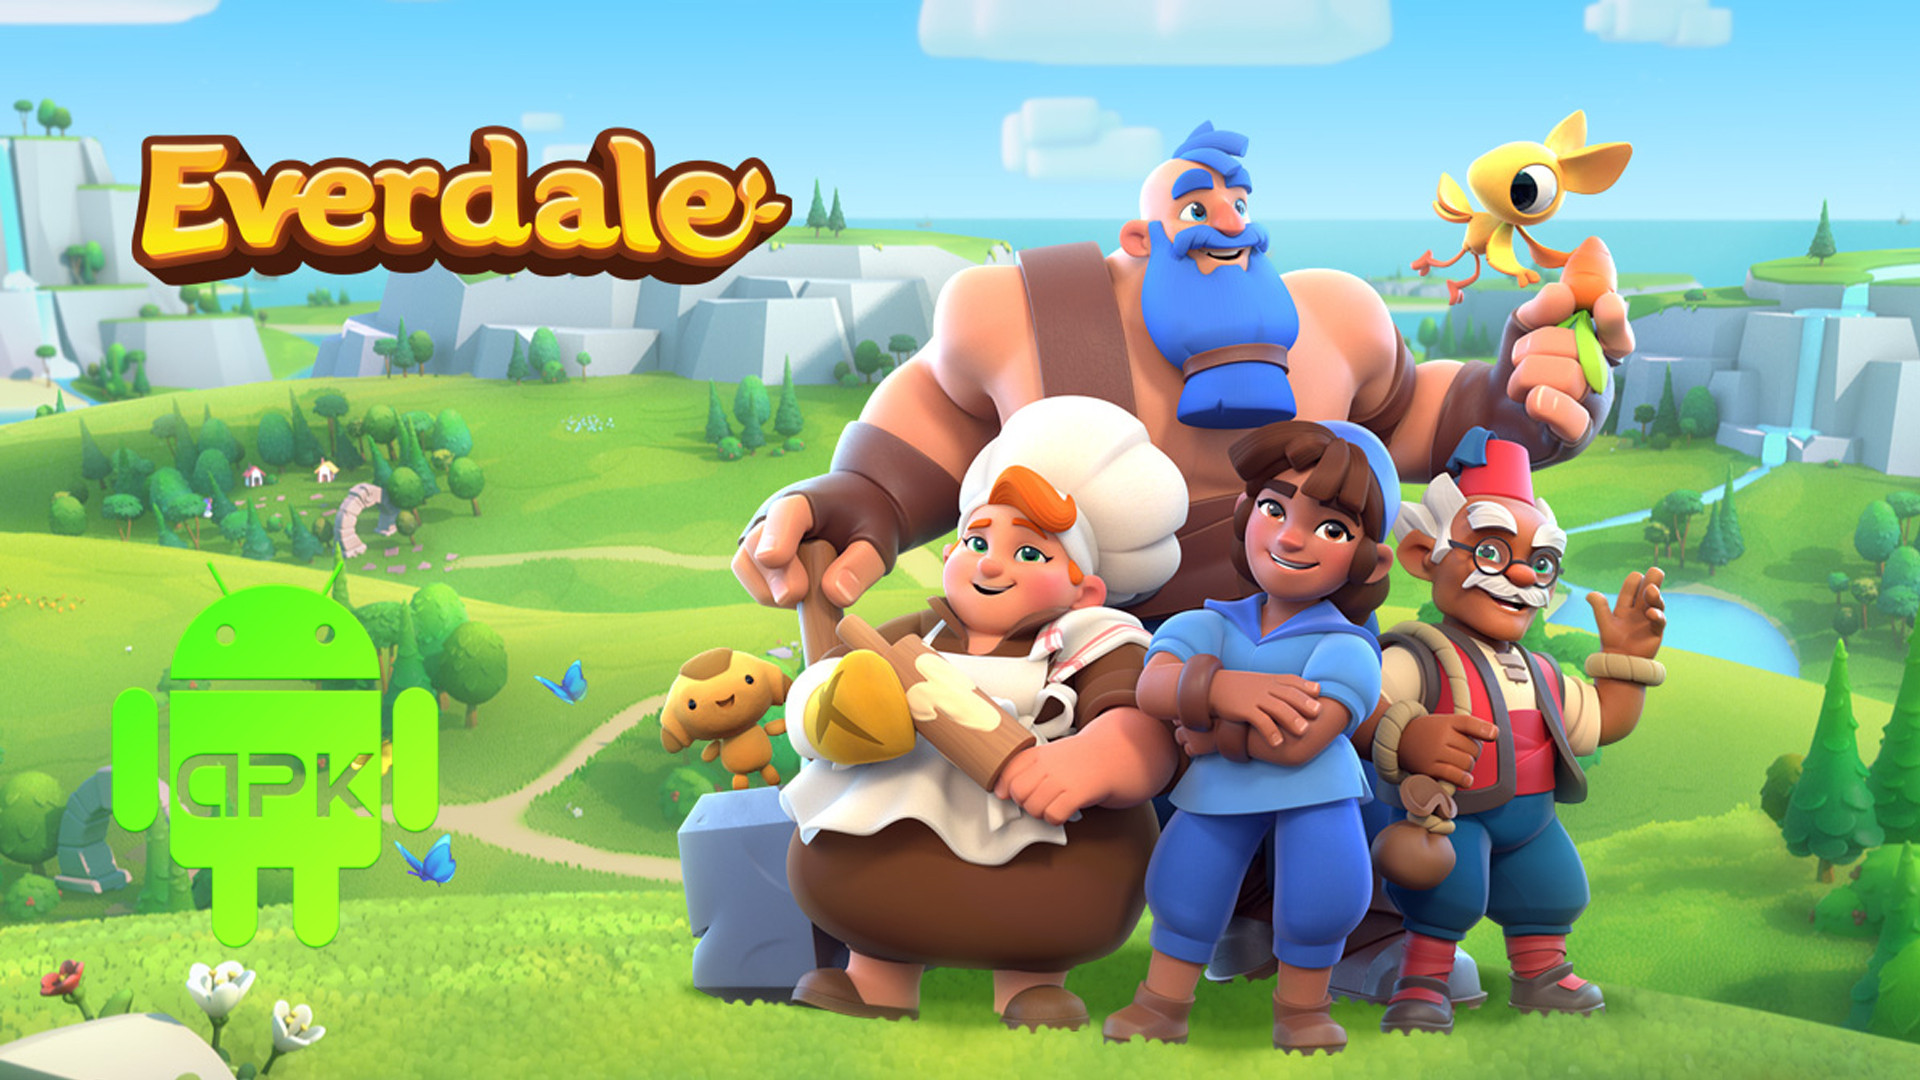 APK Everdale, comment télécharger et installer le jeu sur Android ?